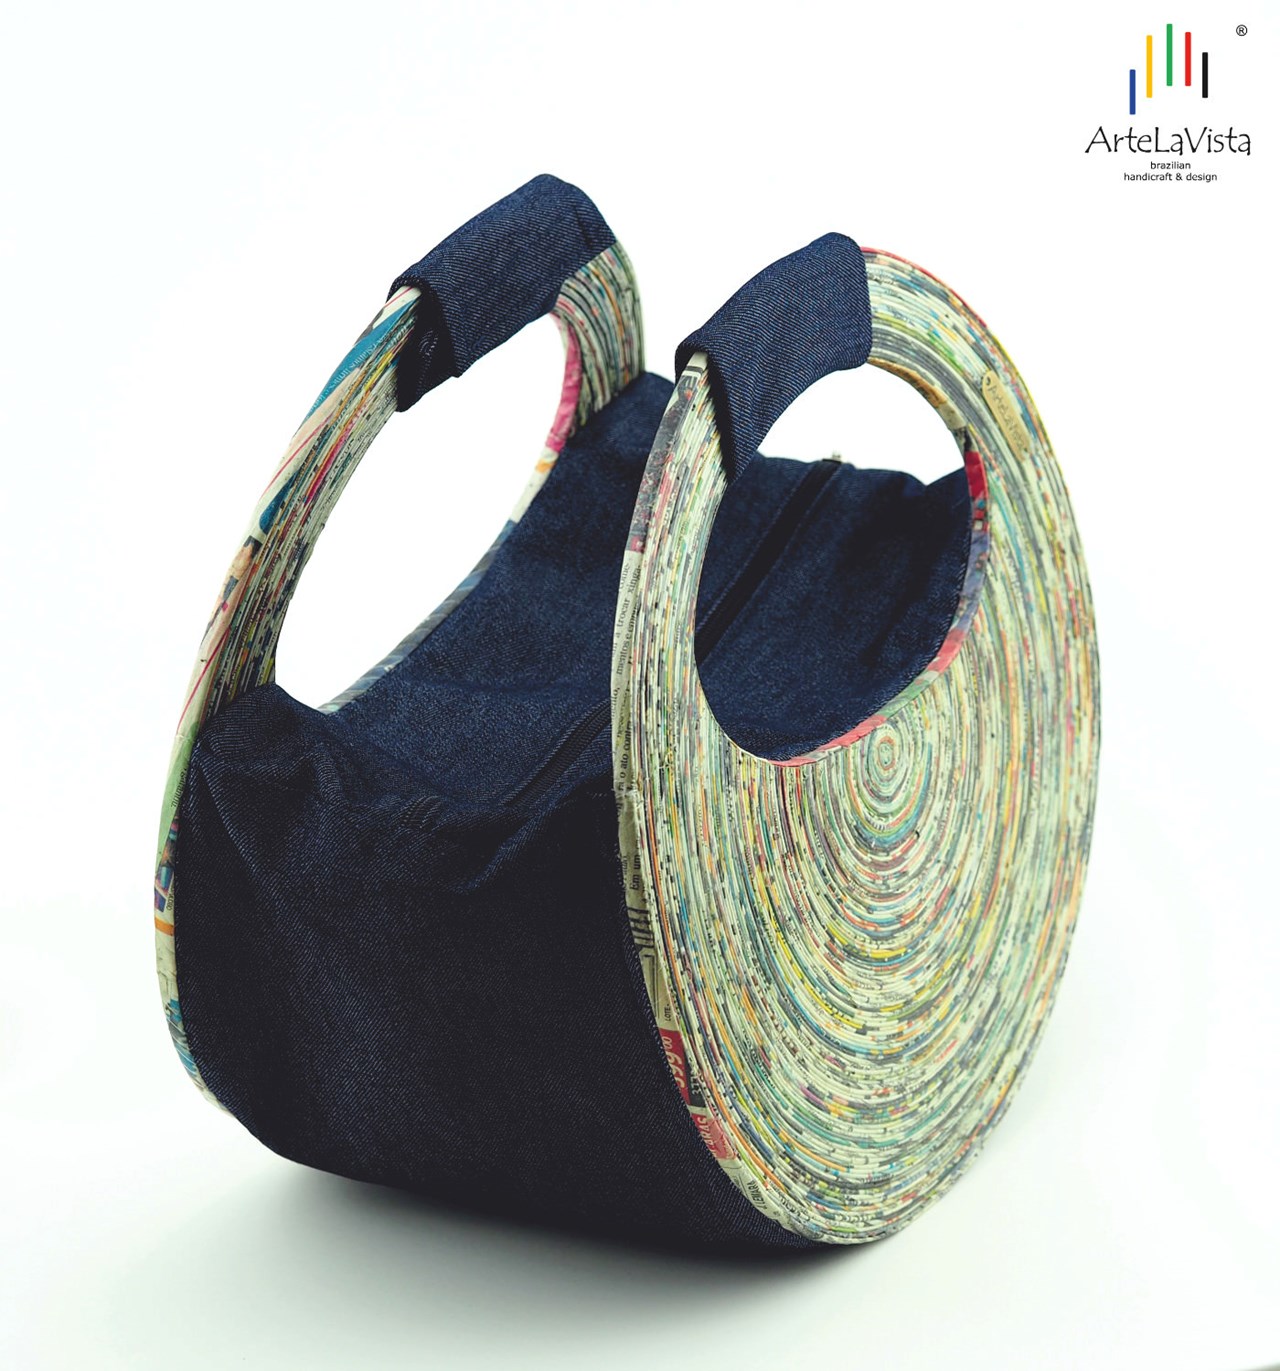 ArteLaVista - brazilian handicraft & design Produkt-Beispiele  Violeta - Eco-Designtasche aus recyceltem Zeitungspapier